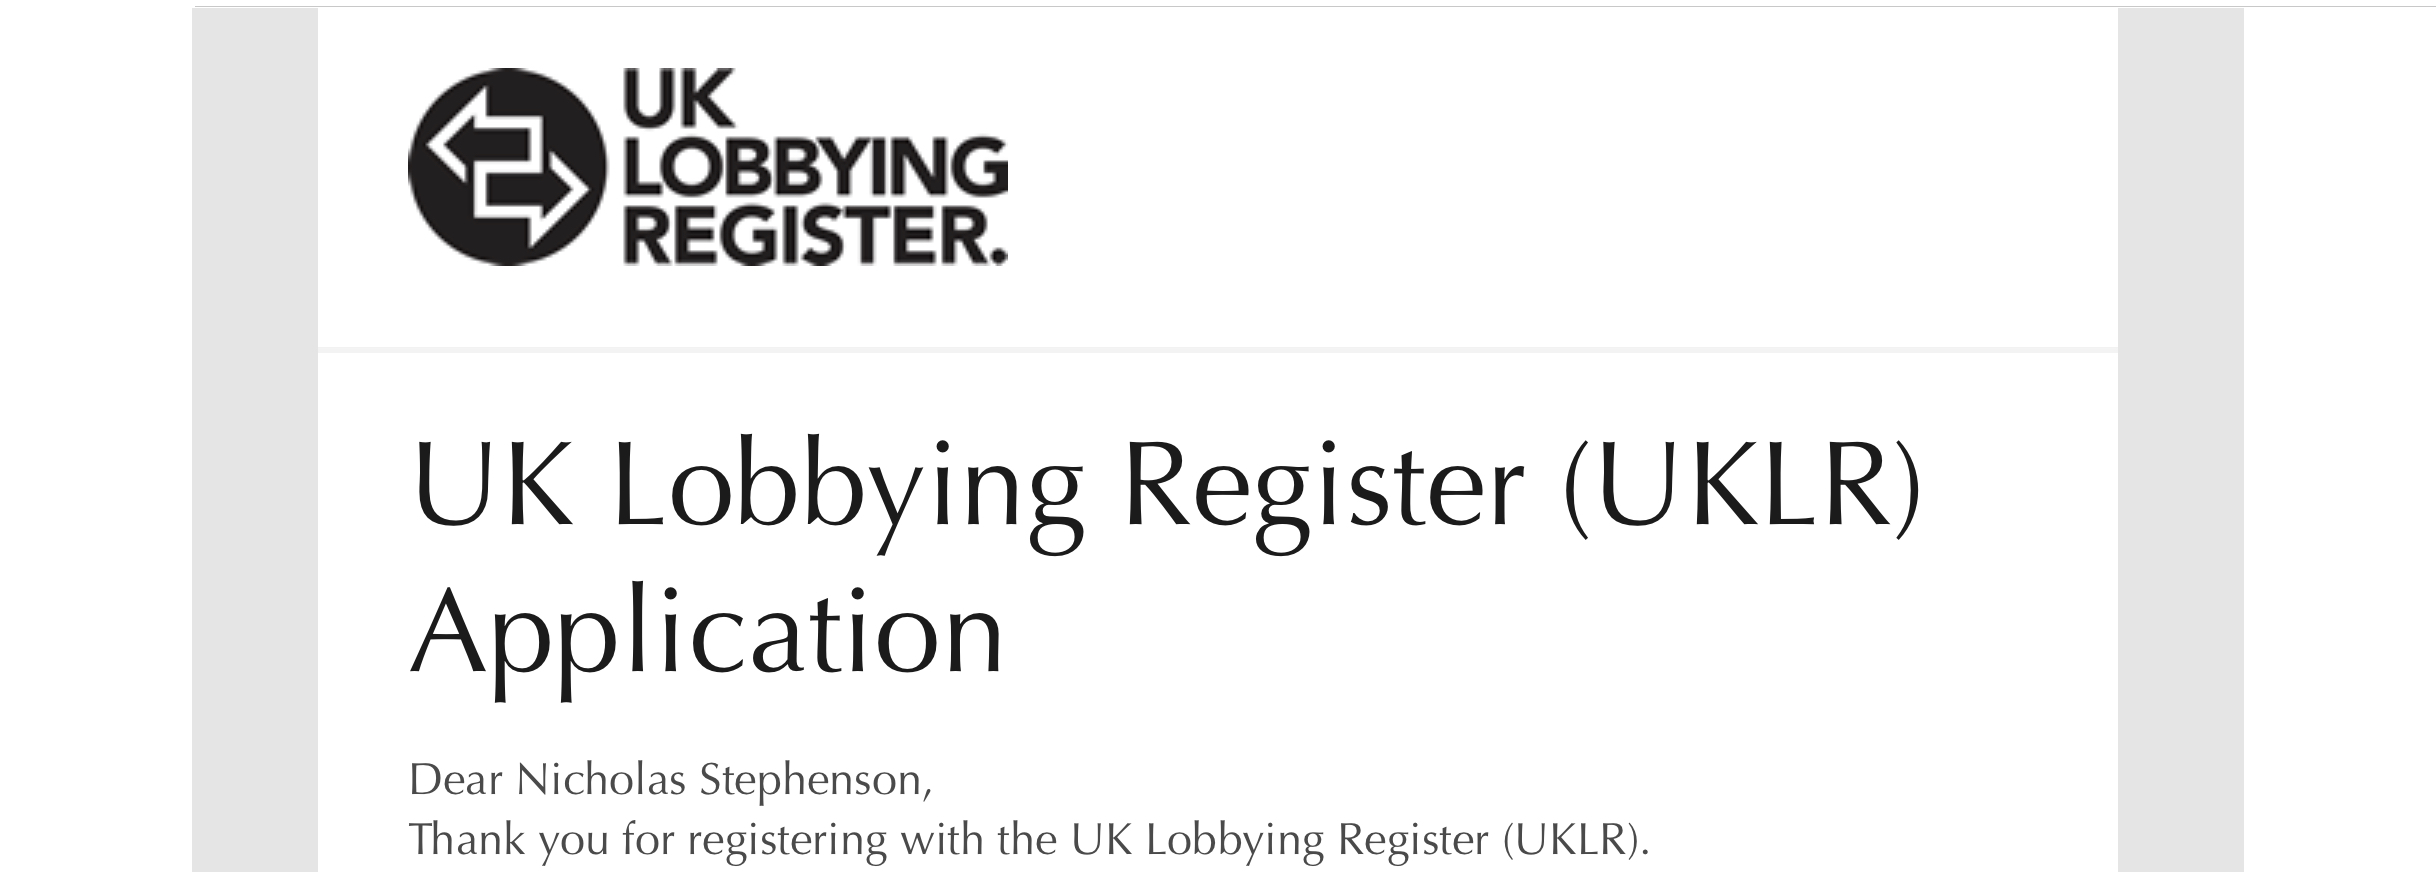 UK lobbying register